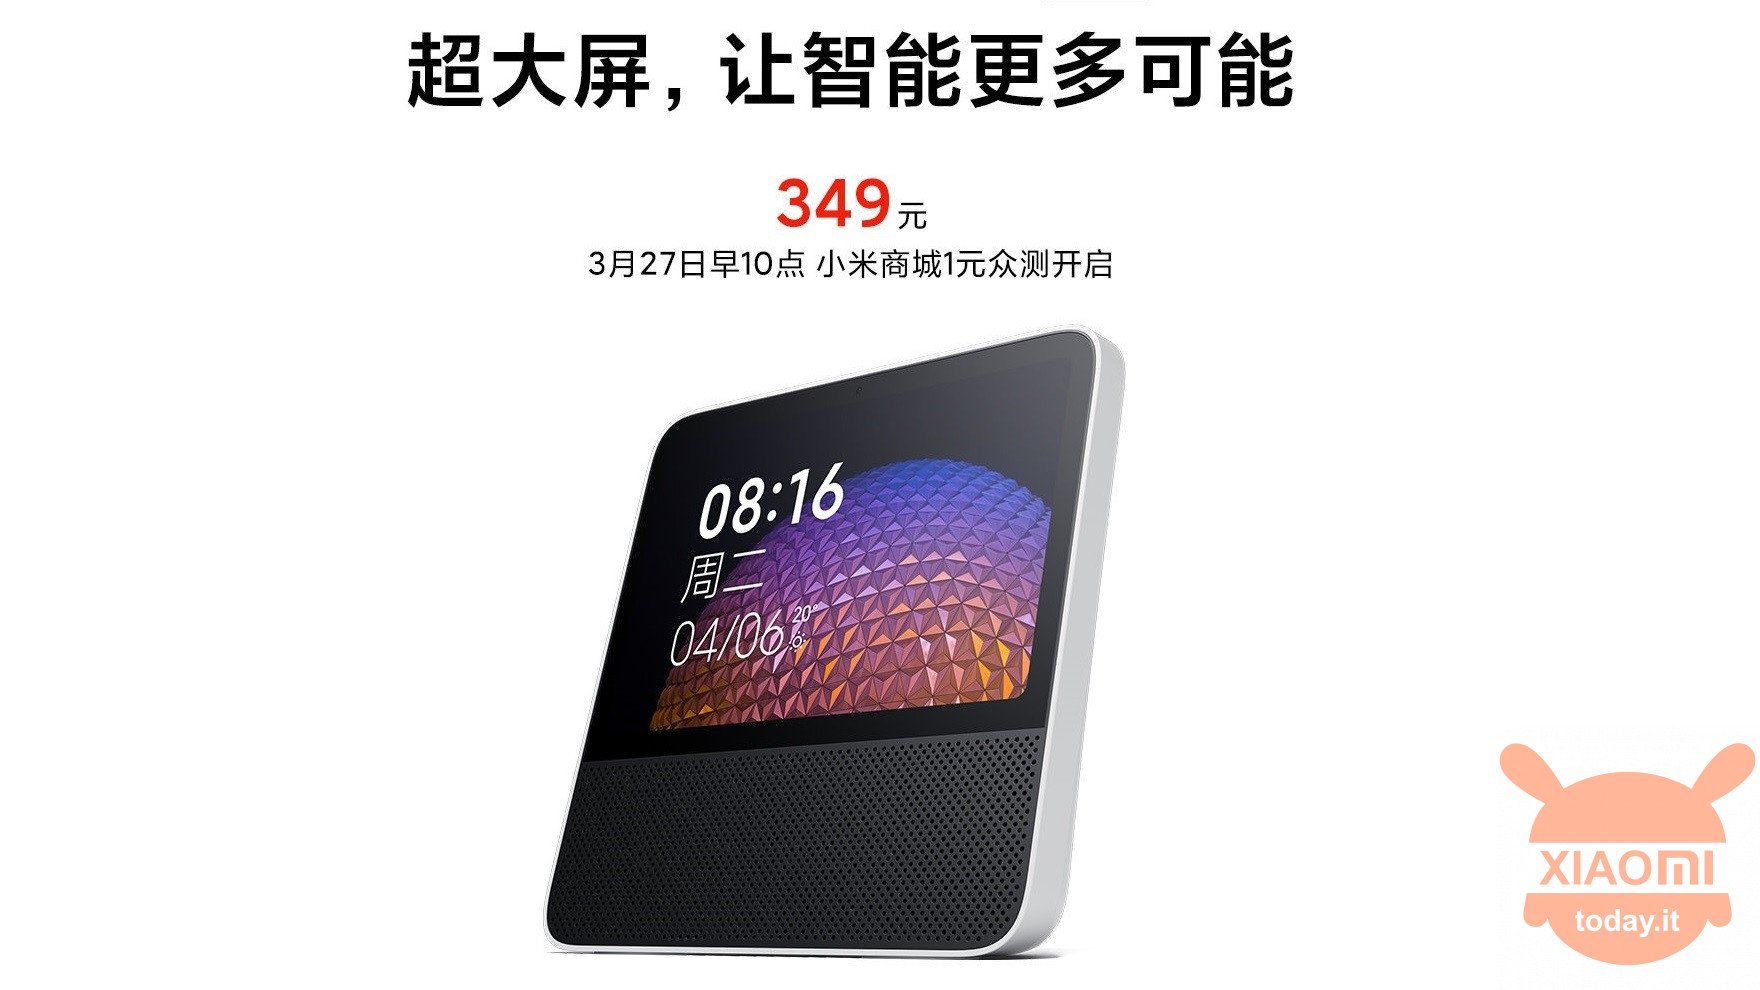 Alto-falante com tela sensível ao toque Redmi XiaoAI